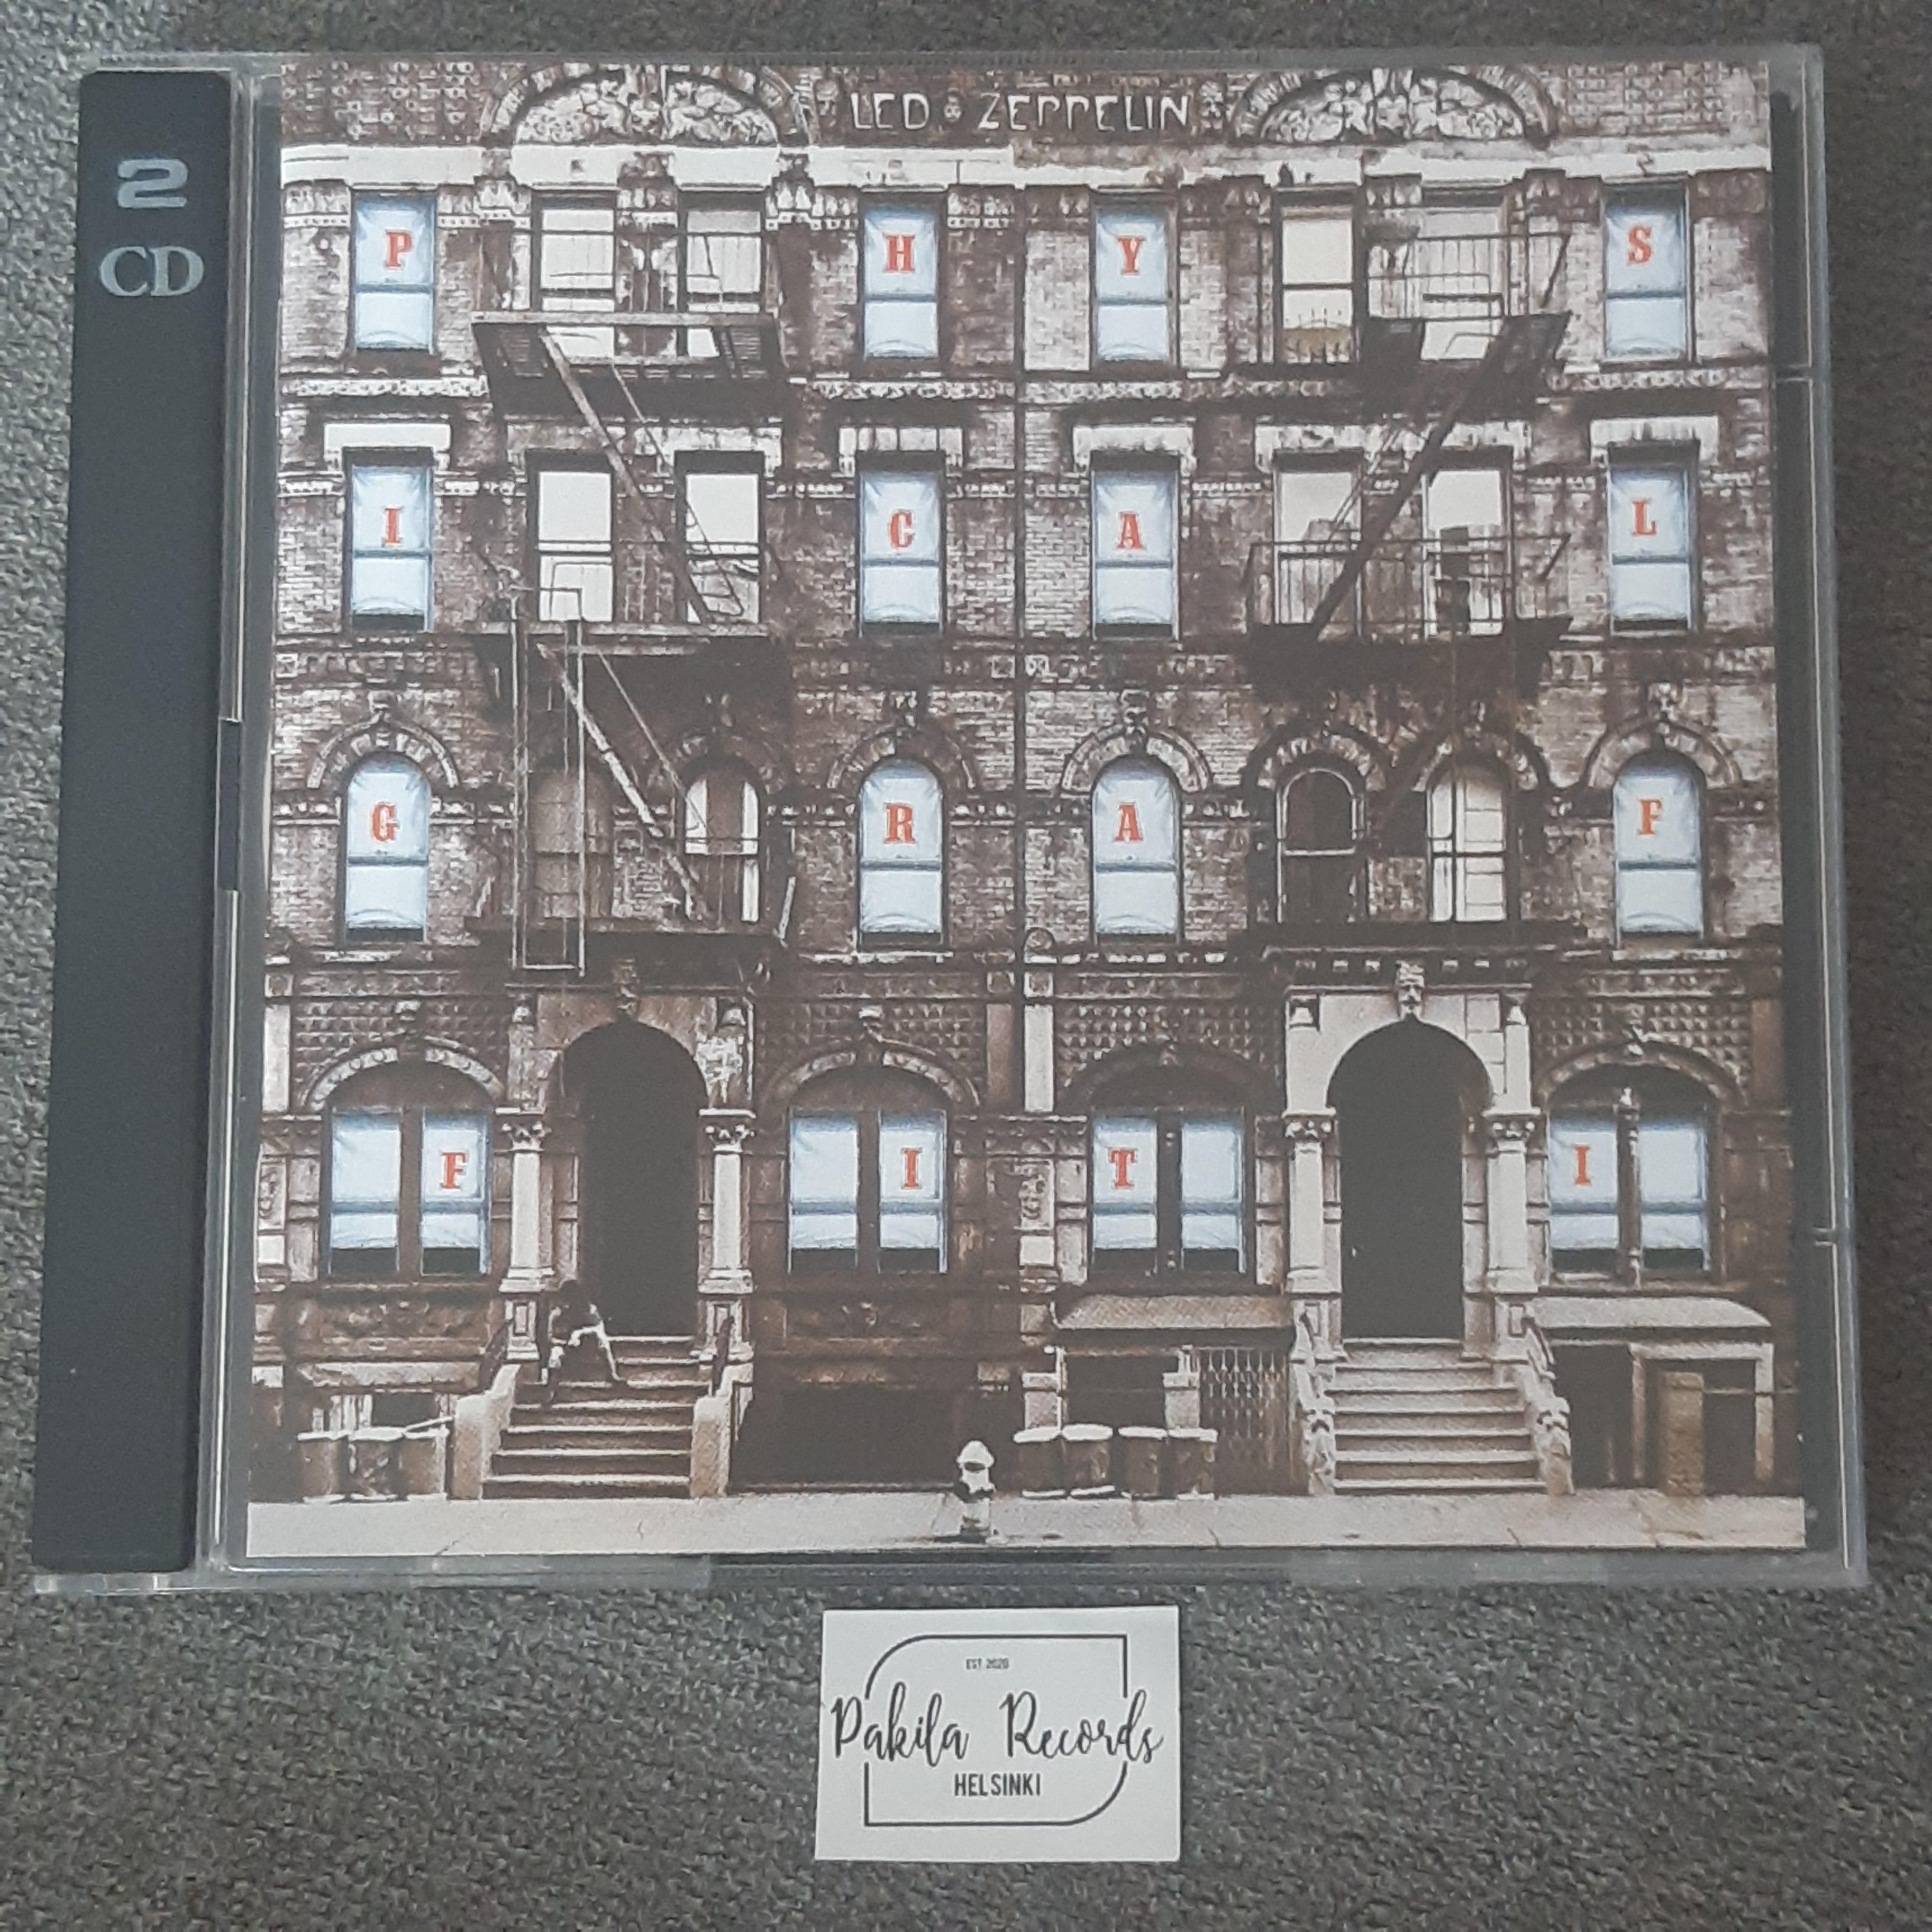 Led Zeppelin - Physical Graffiti - 2 CD (käytetty)